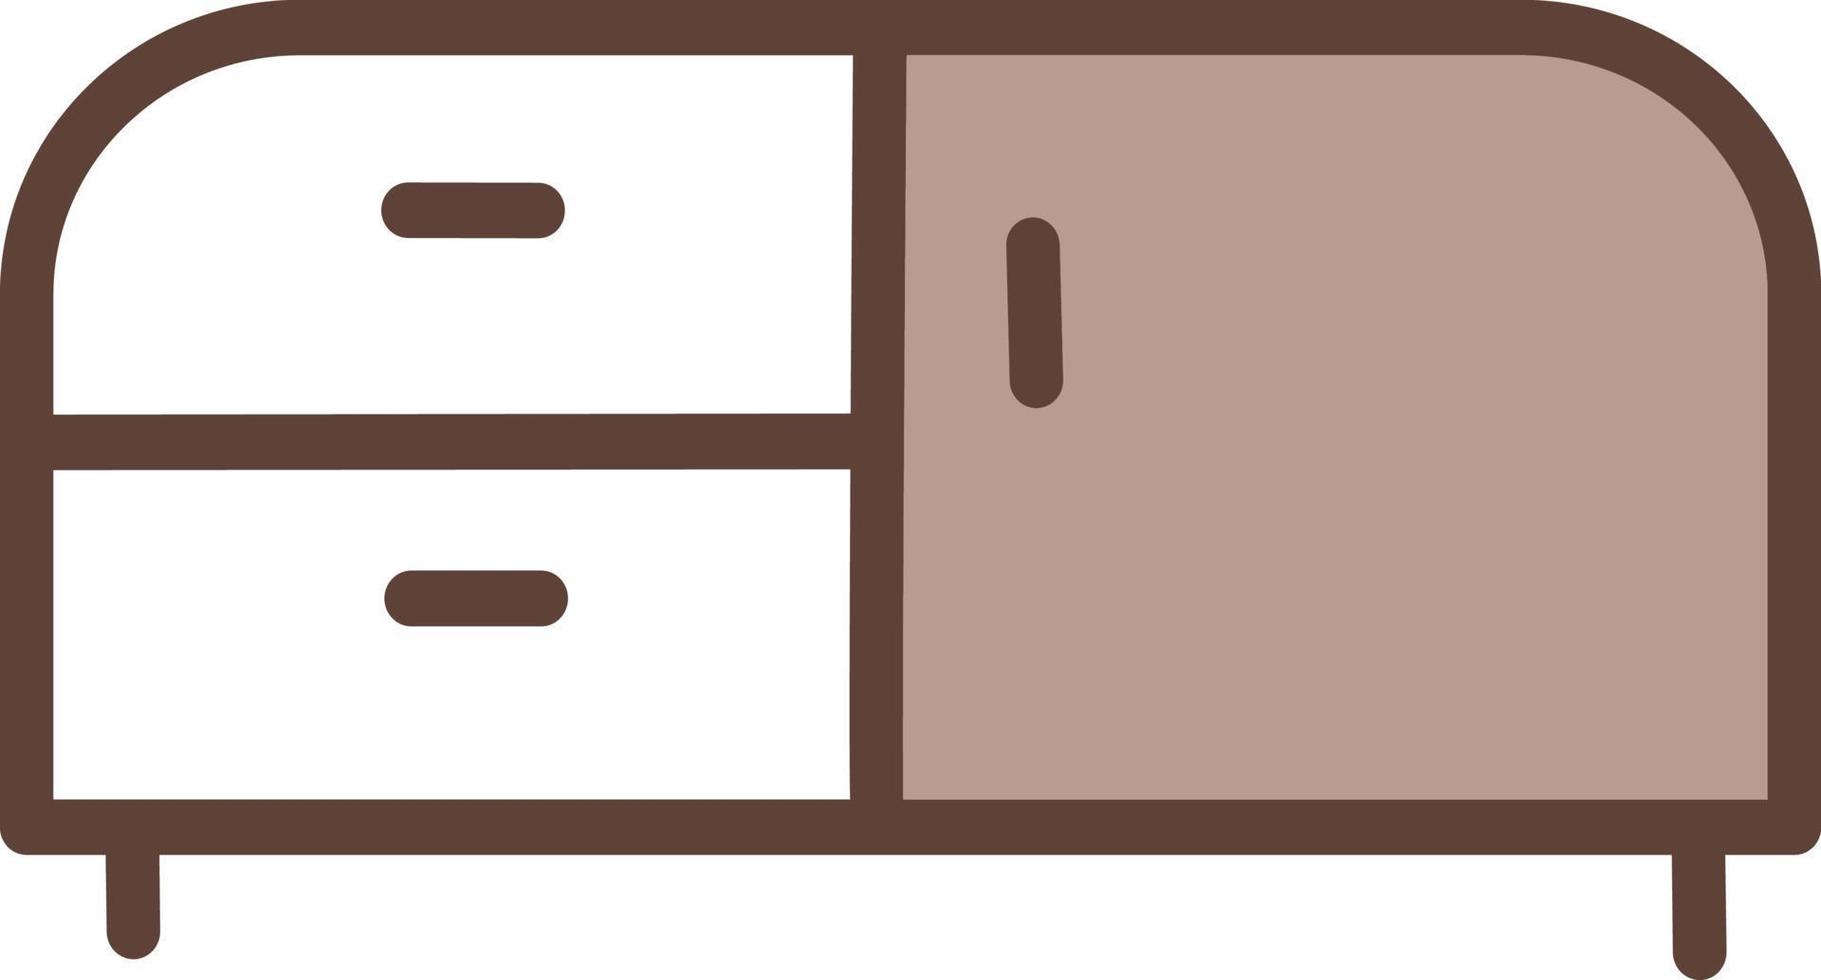 Table de chevet décorative marron, illustration, vecteur sur fond blanc.